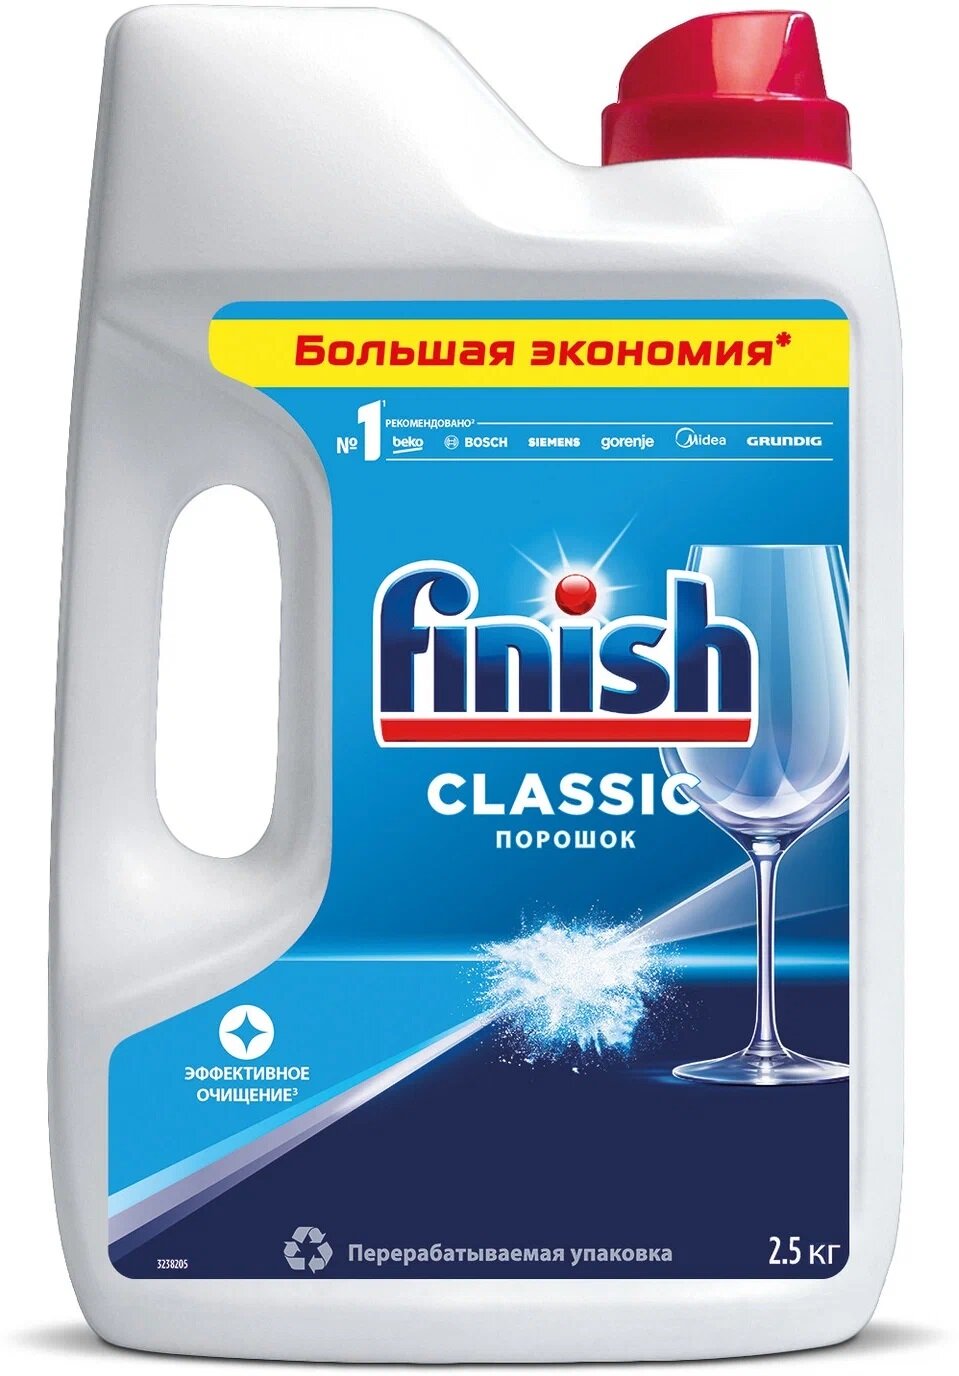 Порошок для посудомоечной машины Finish Classic